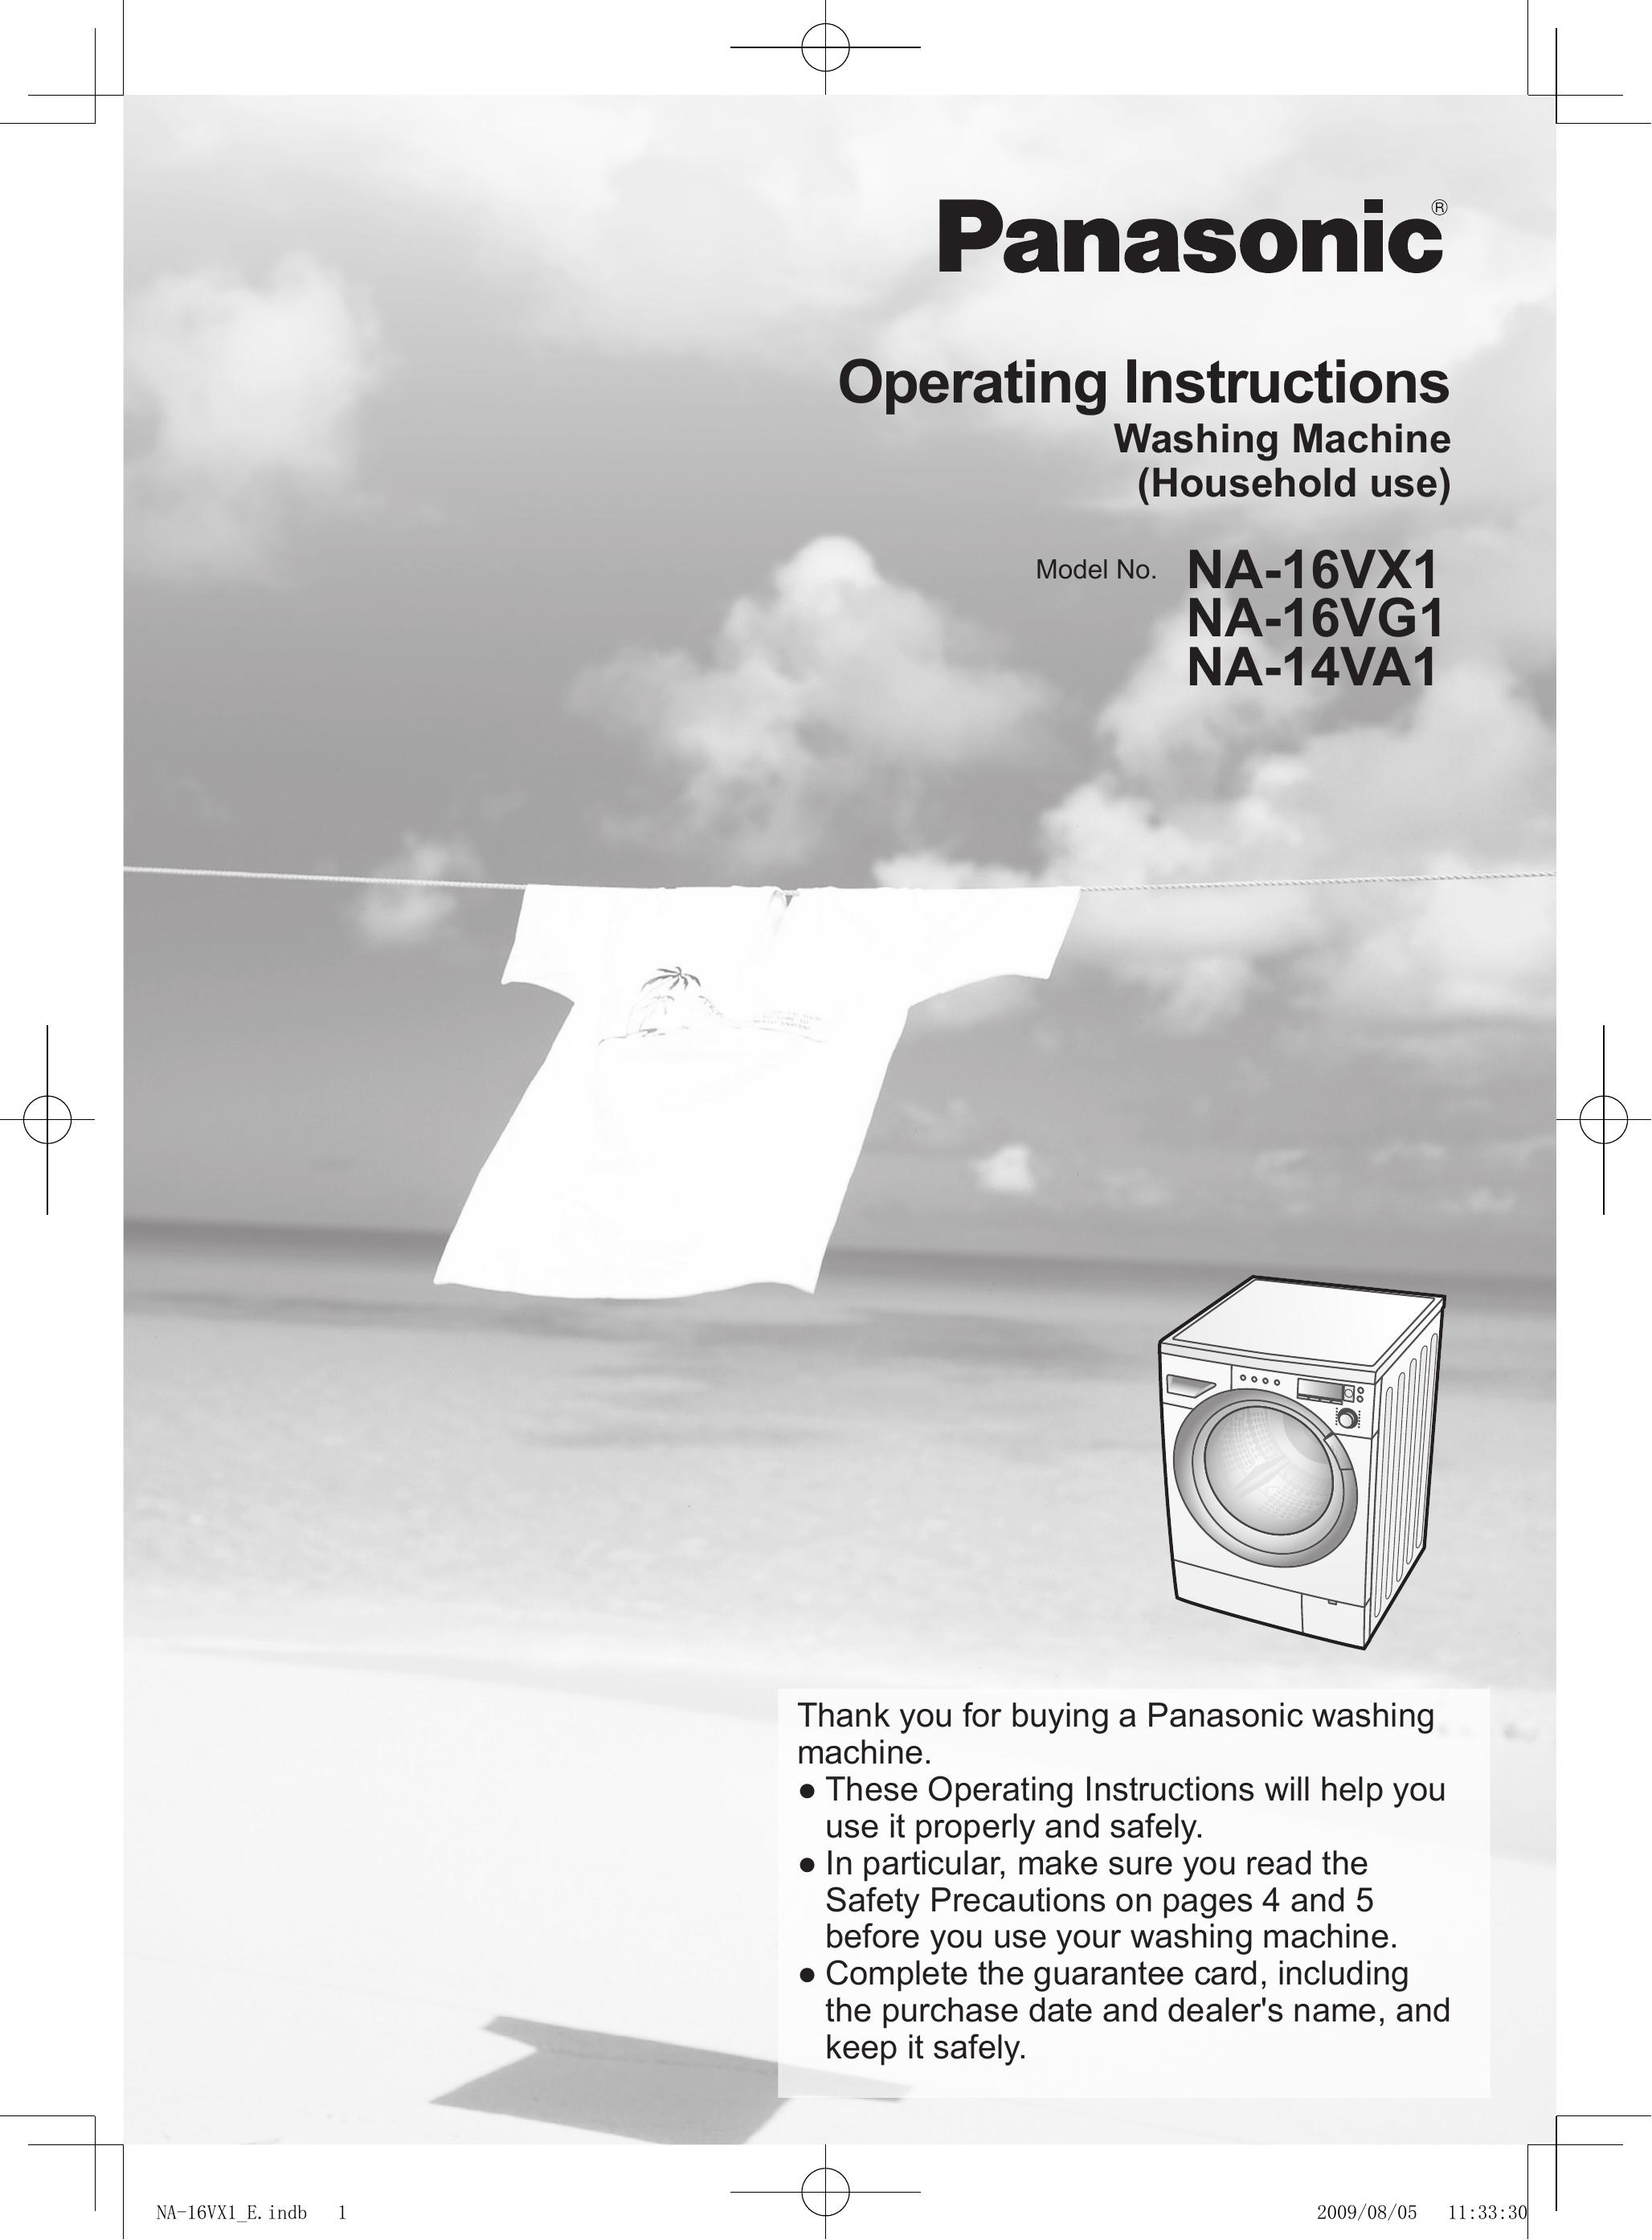 Panasonic NA-14VA1 Washer/Dryer User Manual